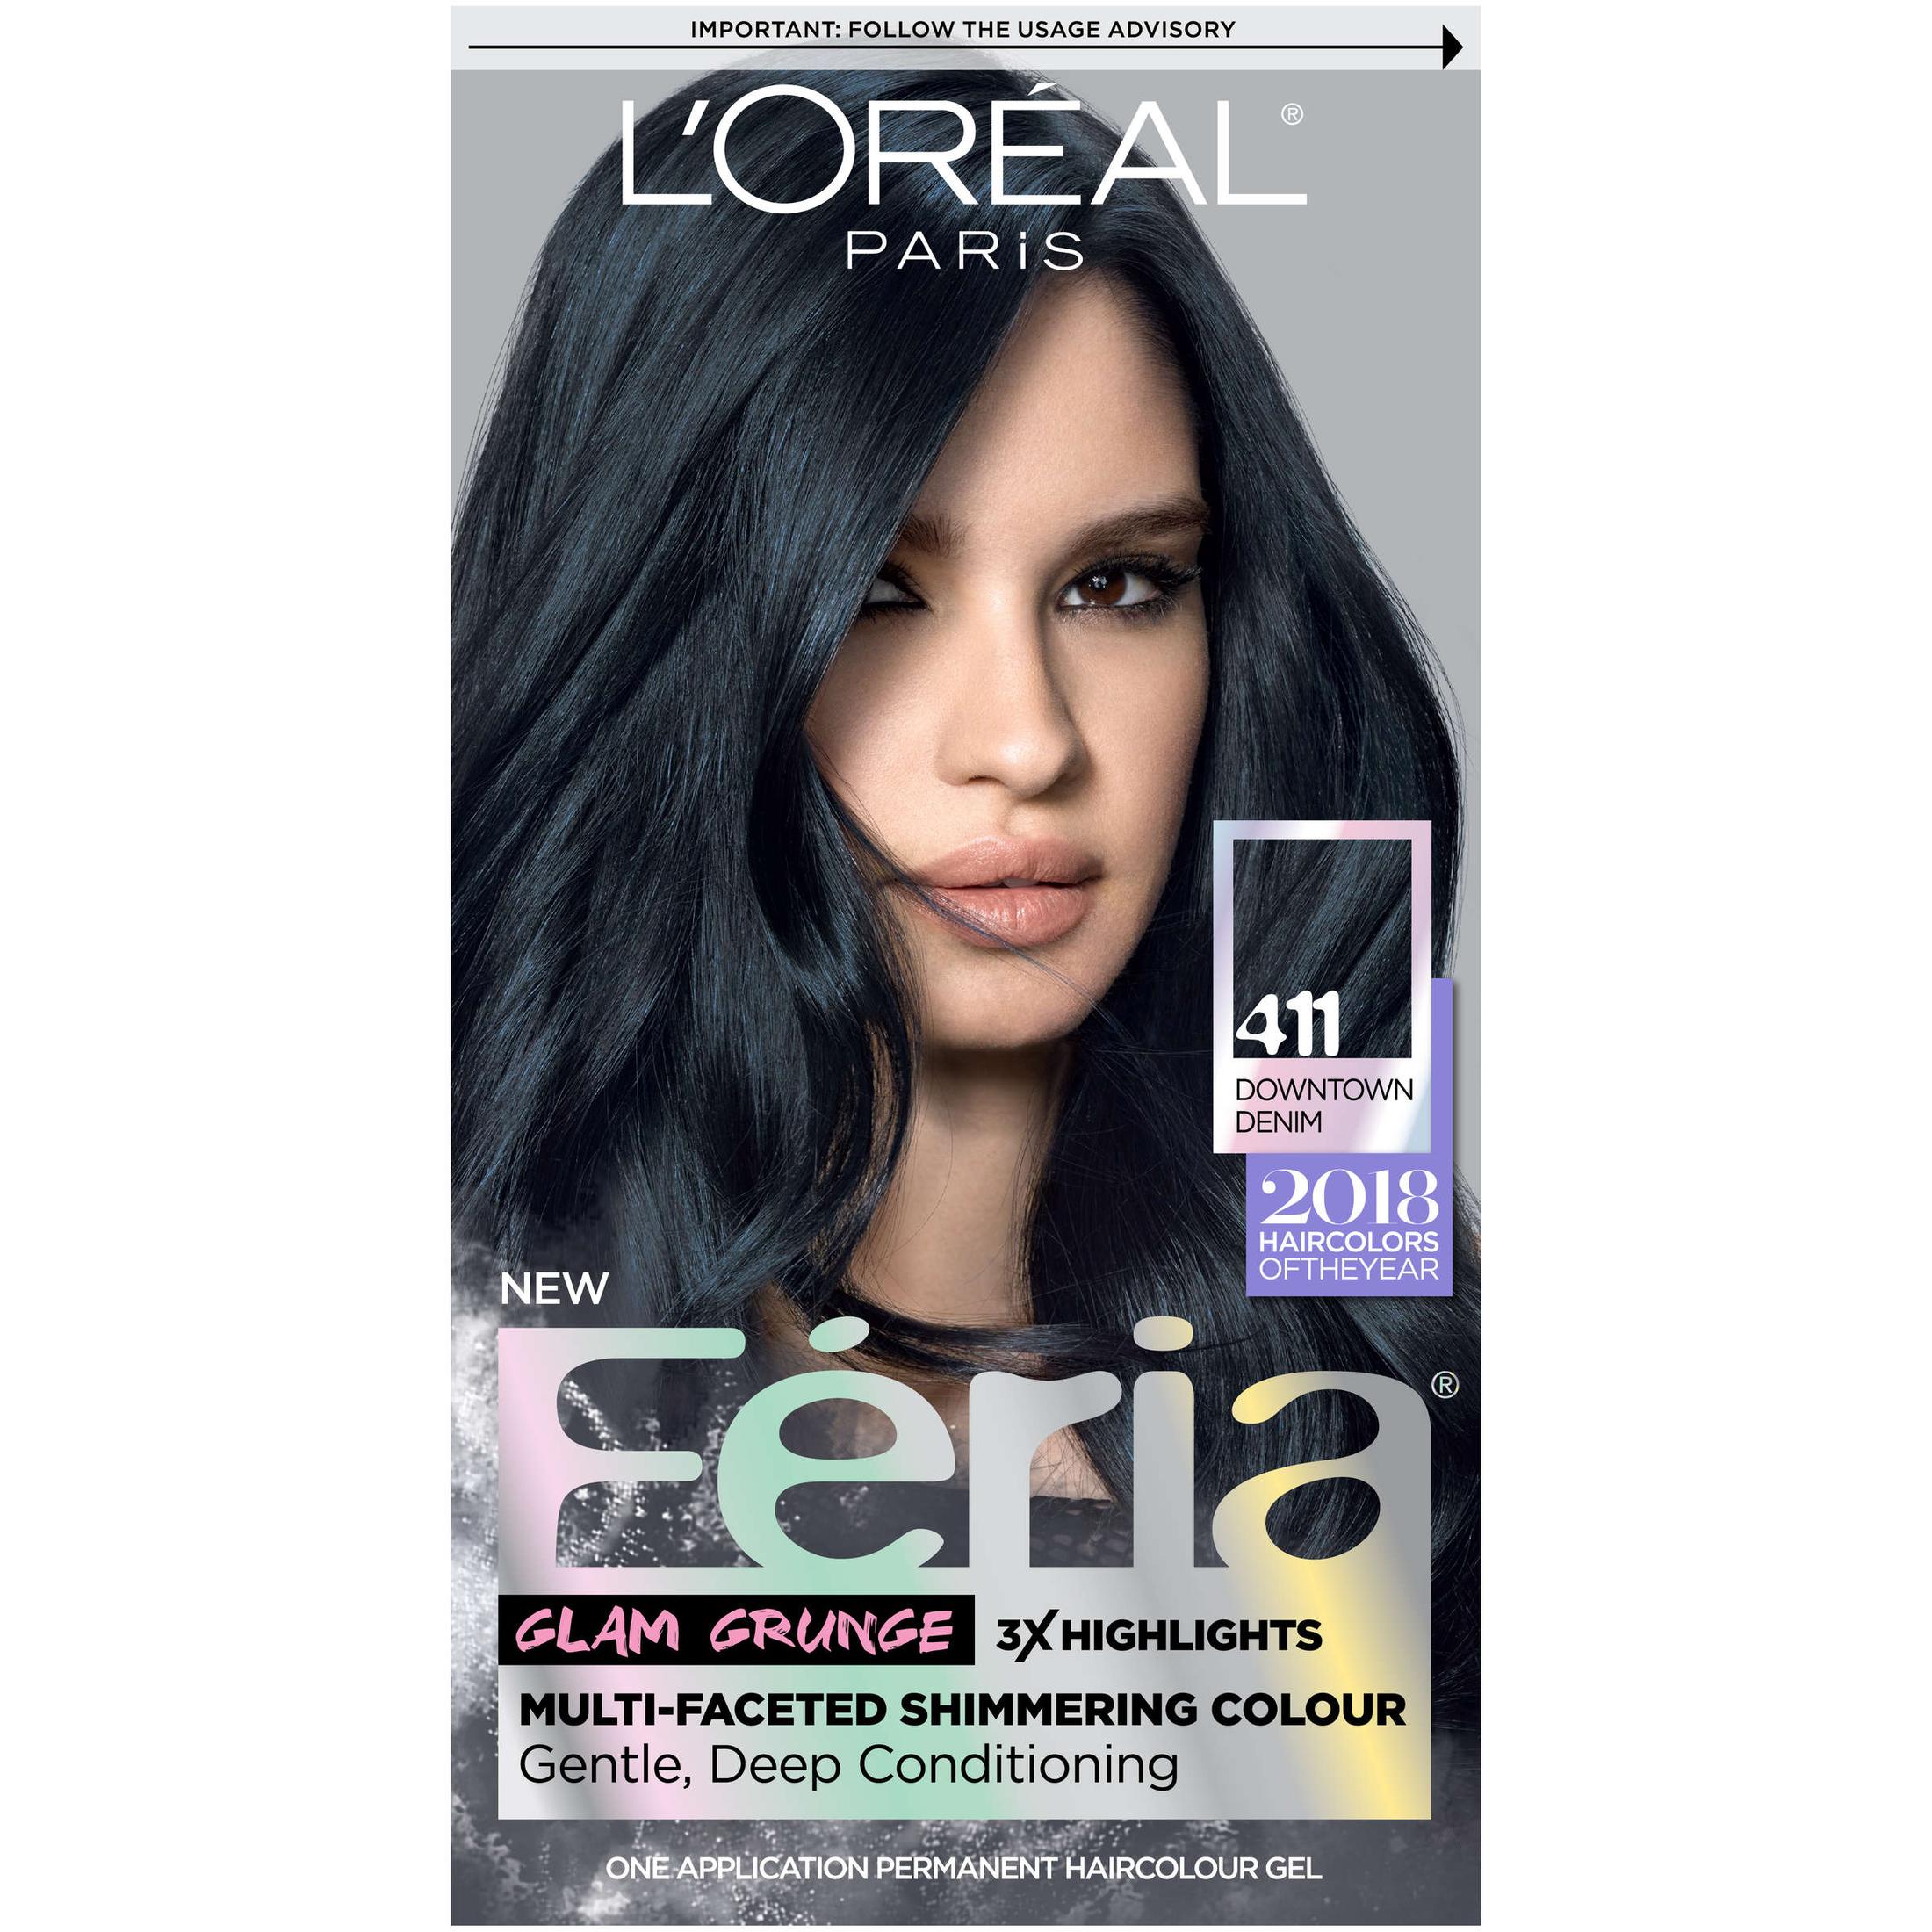 L'Oreal Paris Feria Permanent Hair Color, 411 Downtown Denim - image 1 of 9